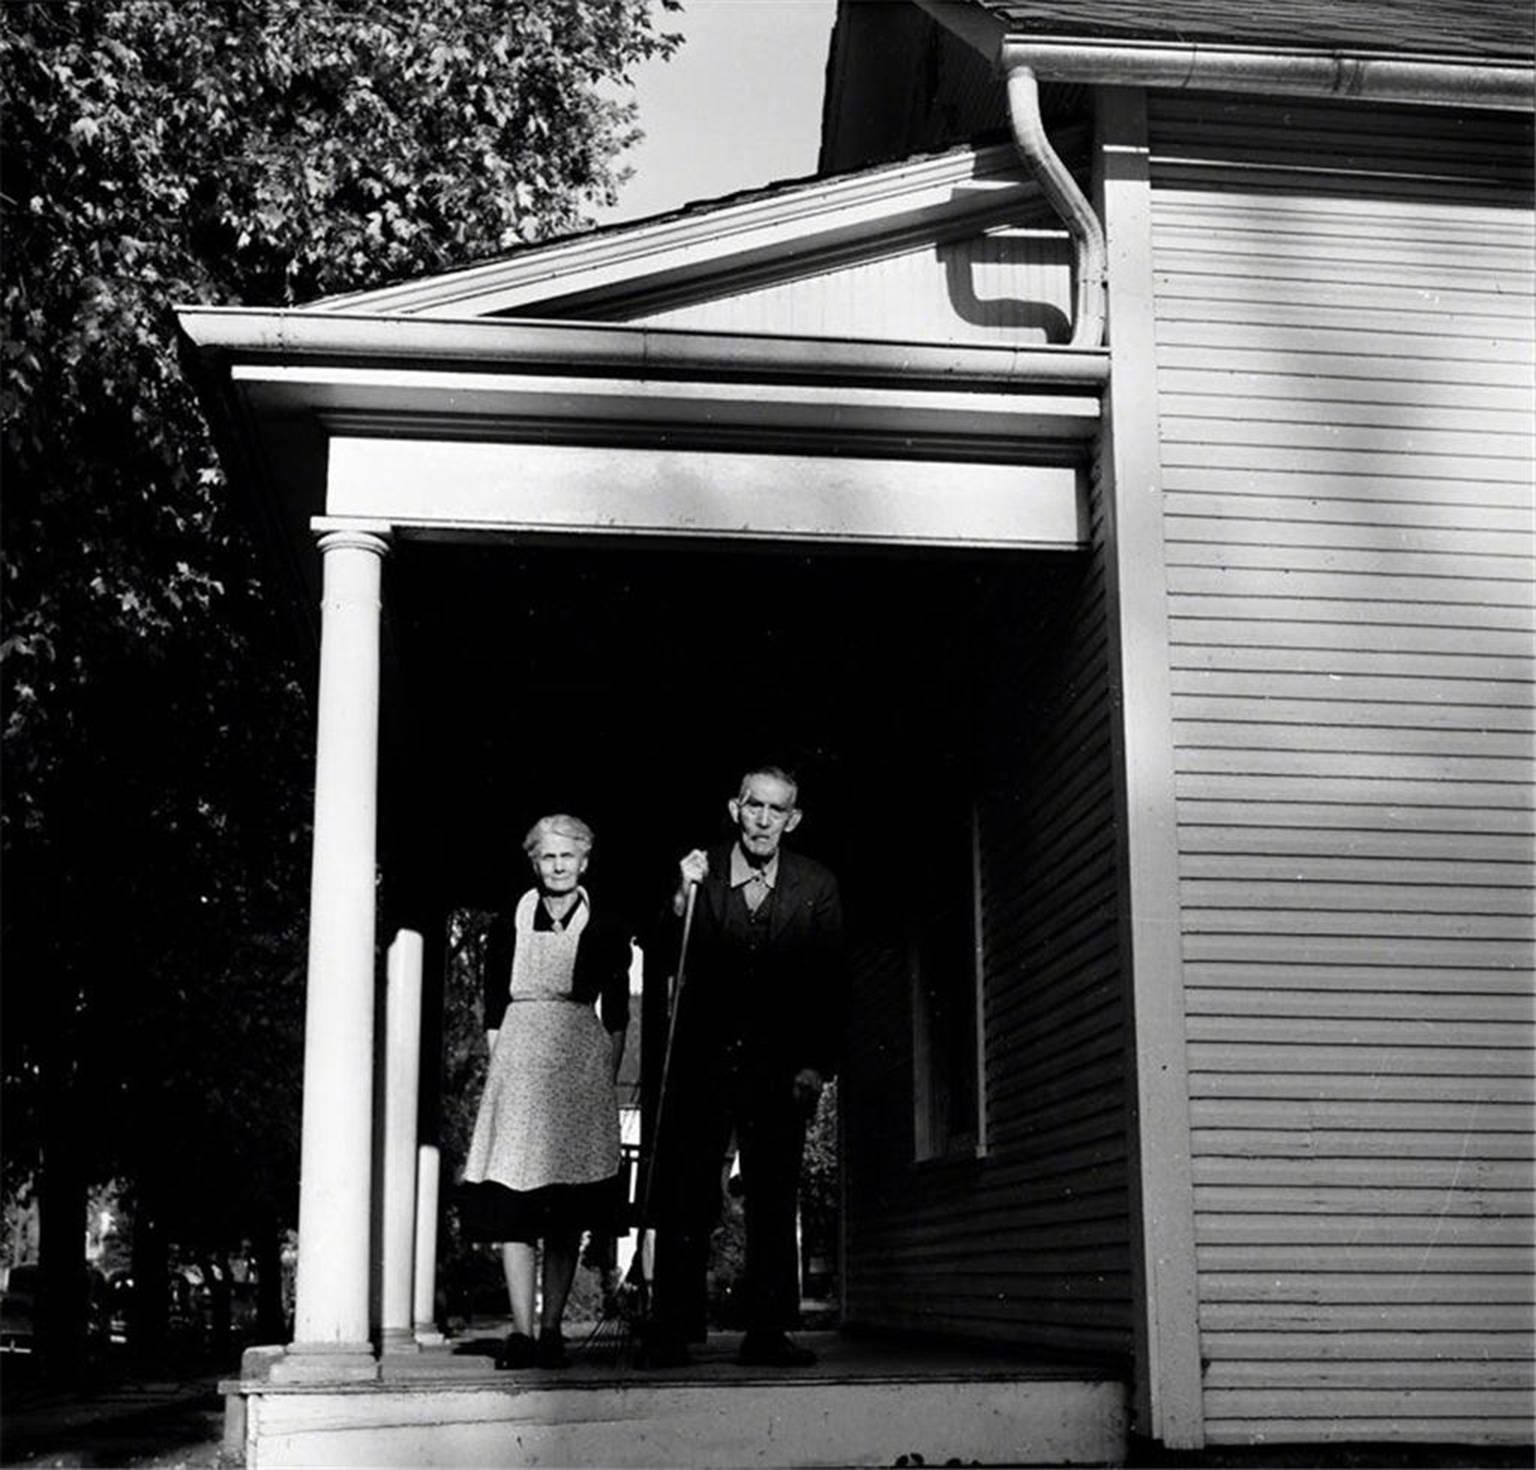 Art Shay Black and White Photograph - Iowa Gothic, 1959